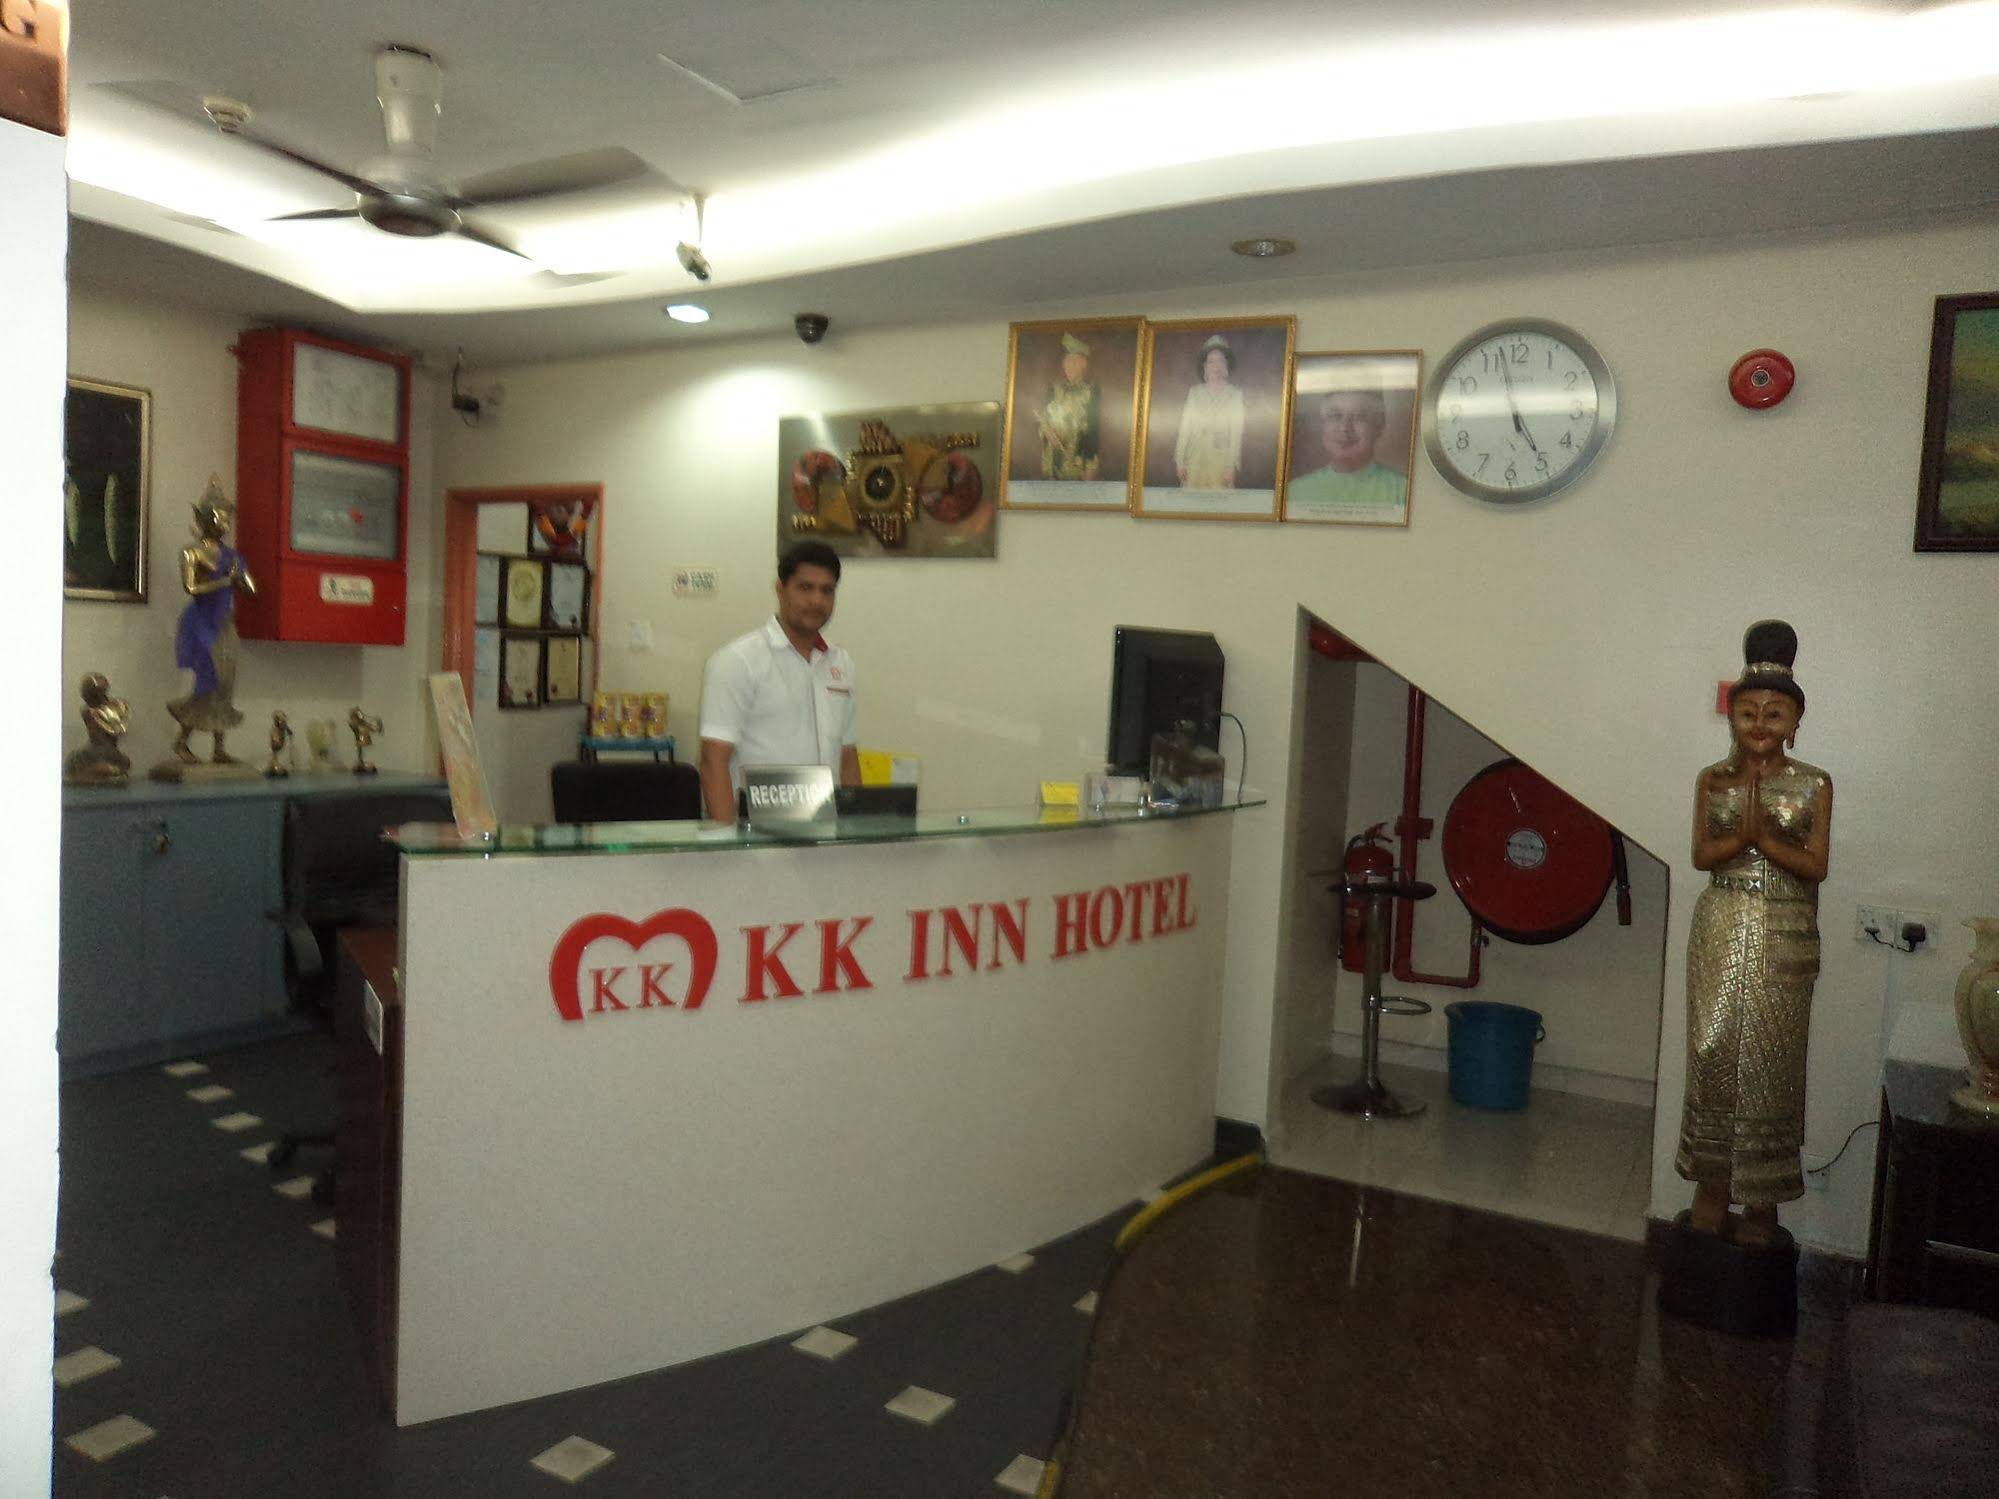 Kk Inn Hotel